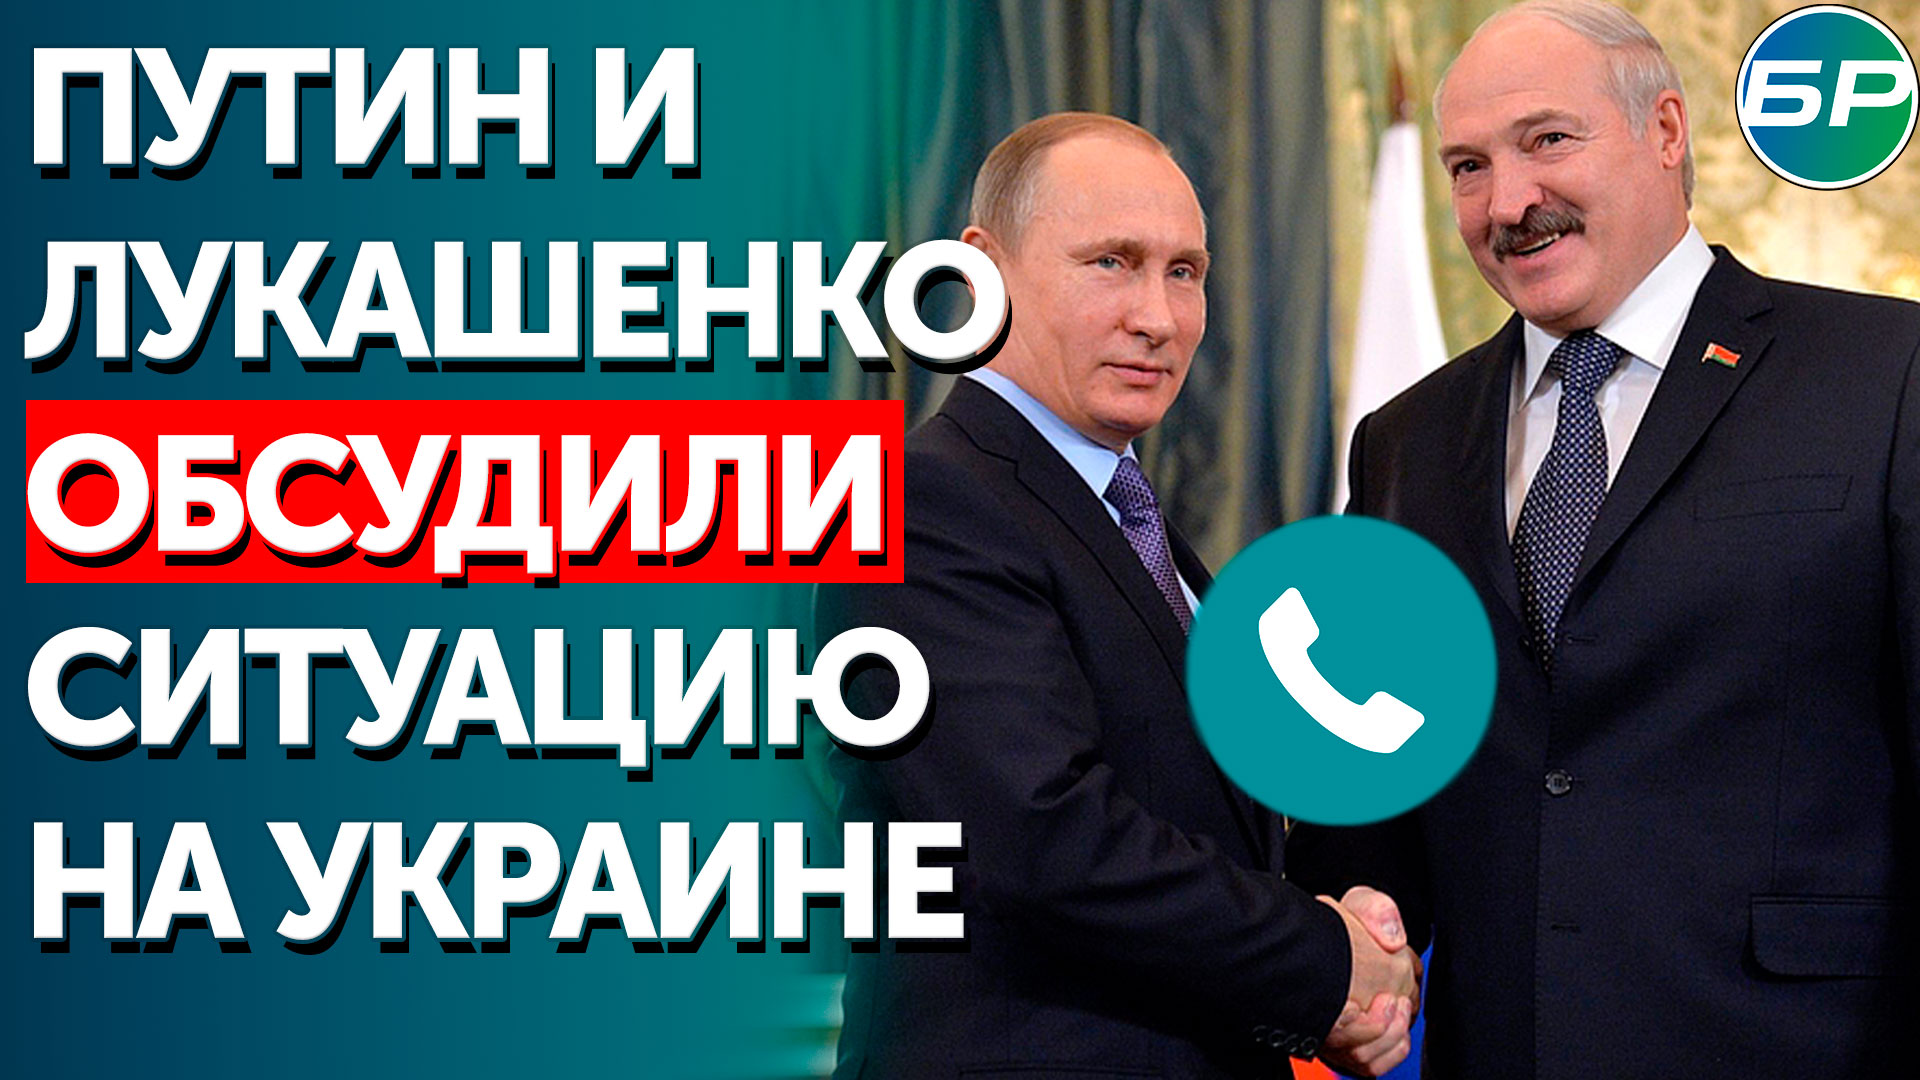 Путин и Лукашенко обсудили ситуацию на Украине